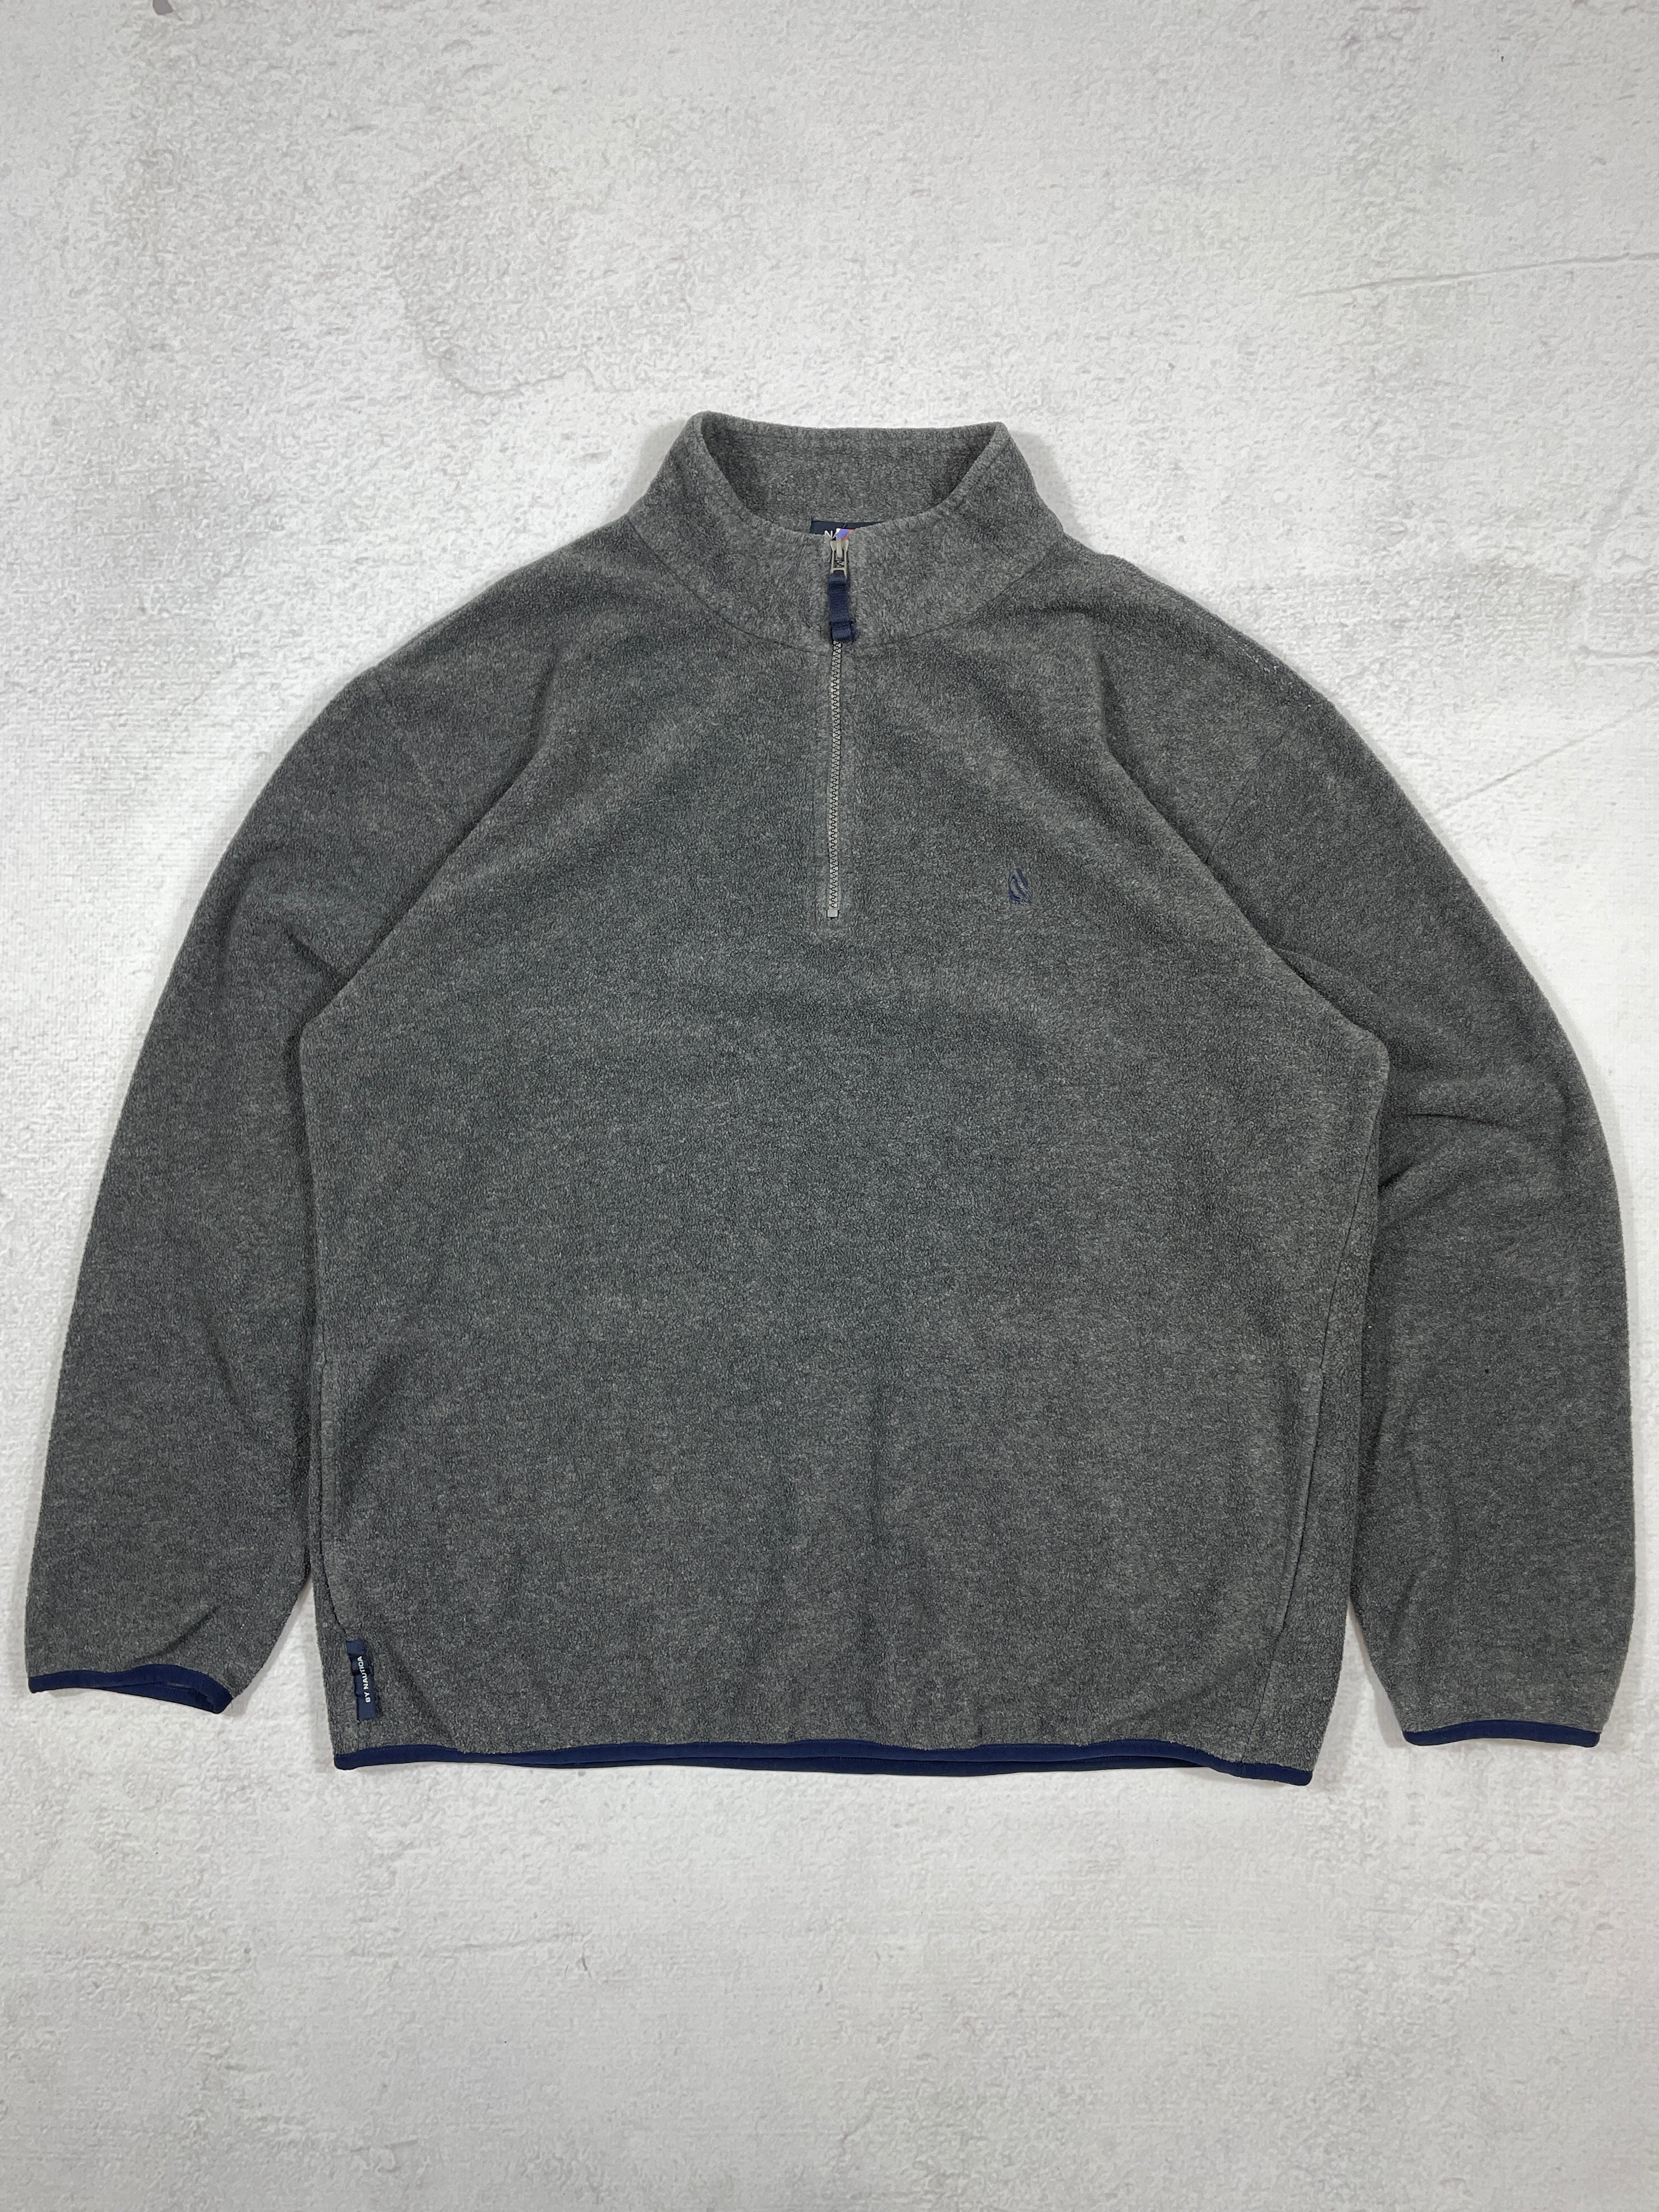 Vintage Nautica 1/4 Zip Fleece Sweatshirt - Men's 2XL